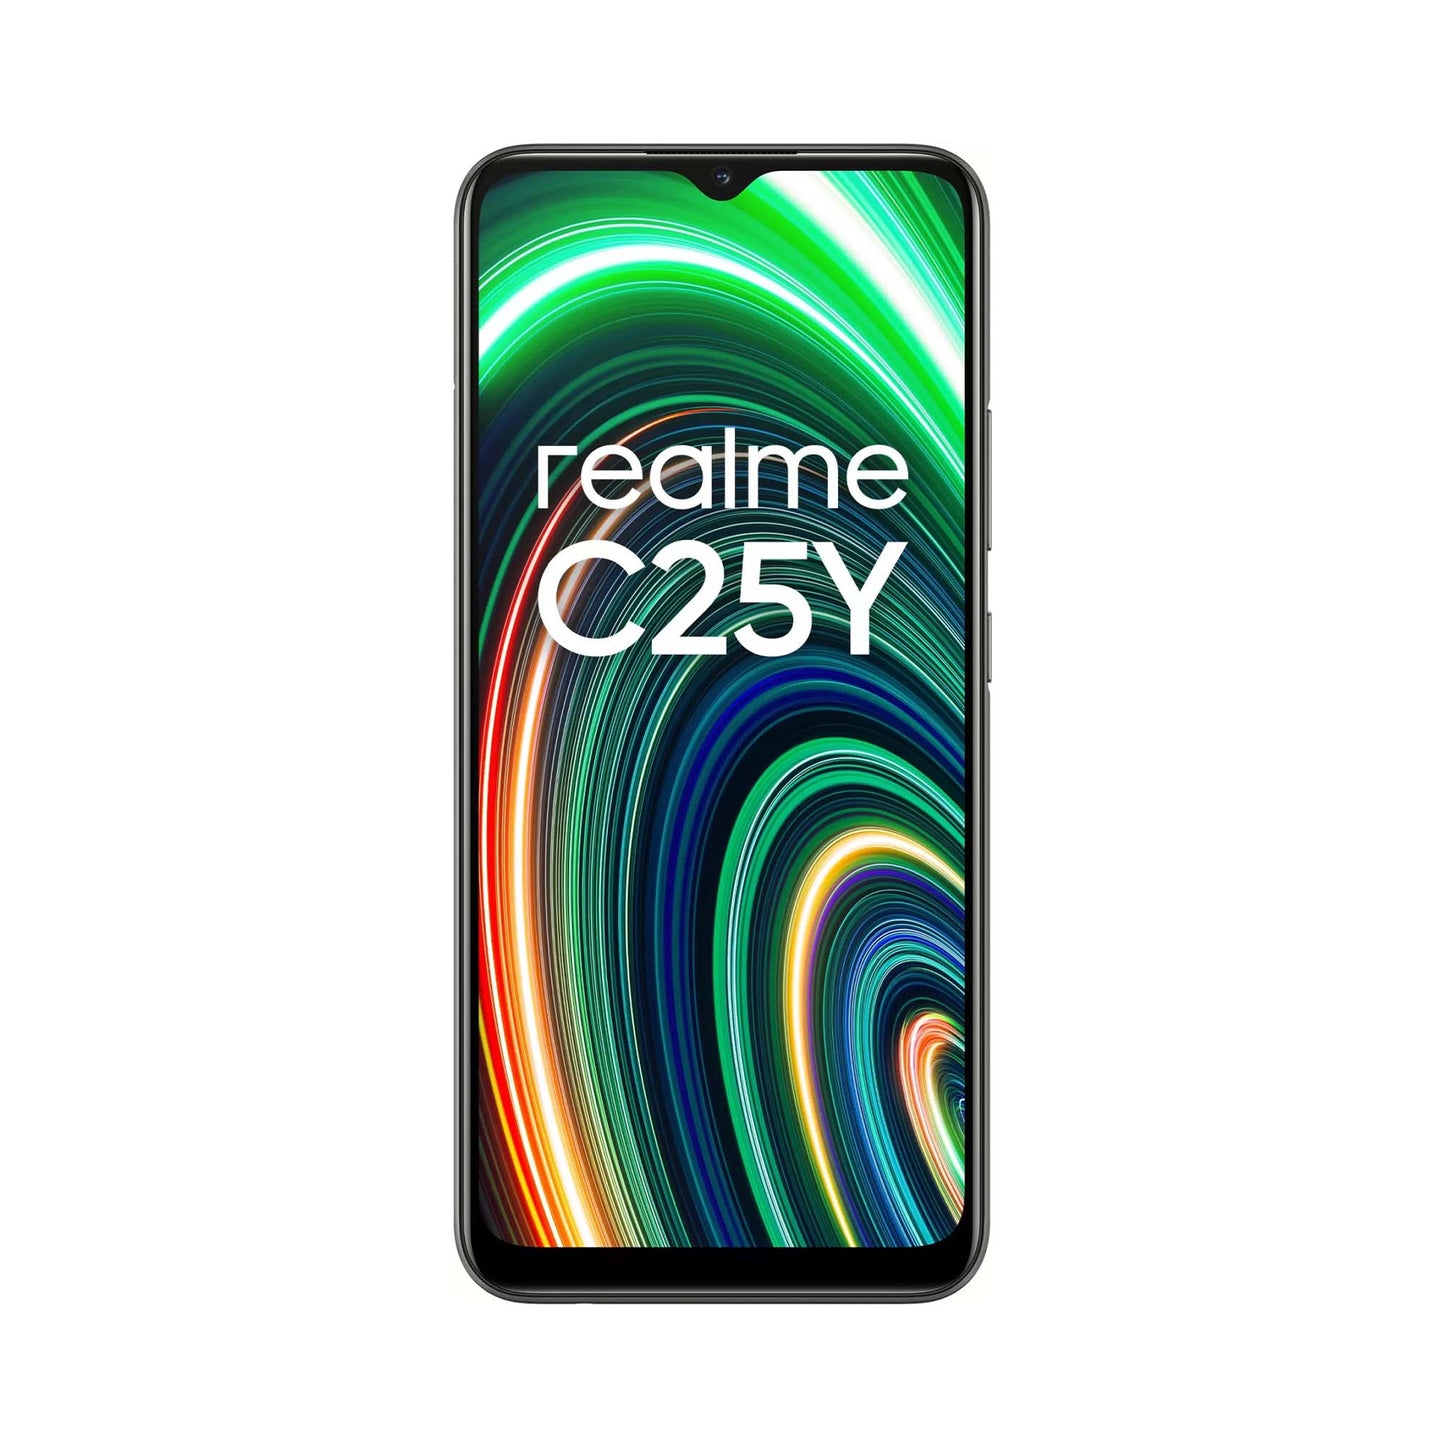 Realme C25-Y